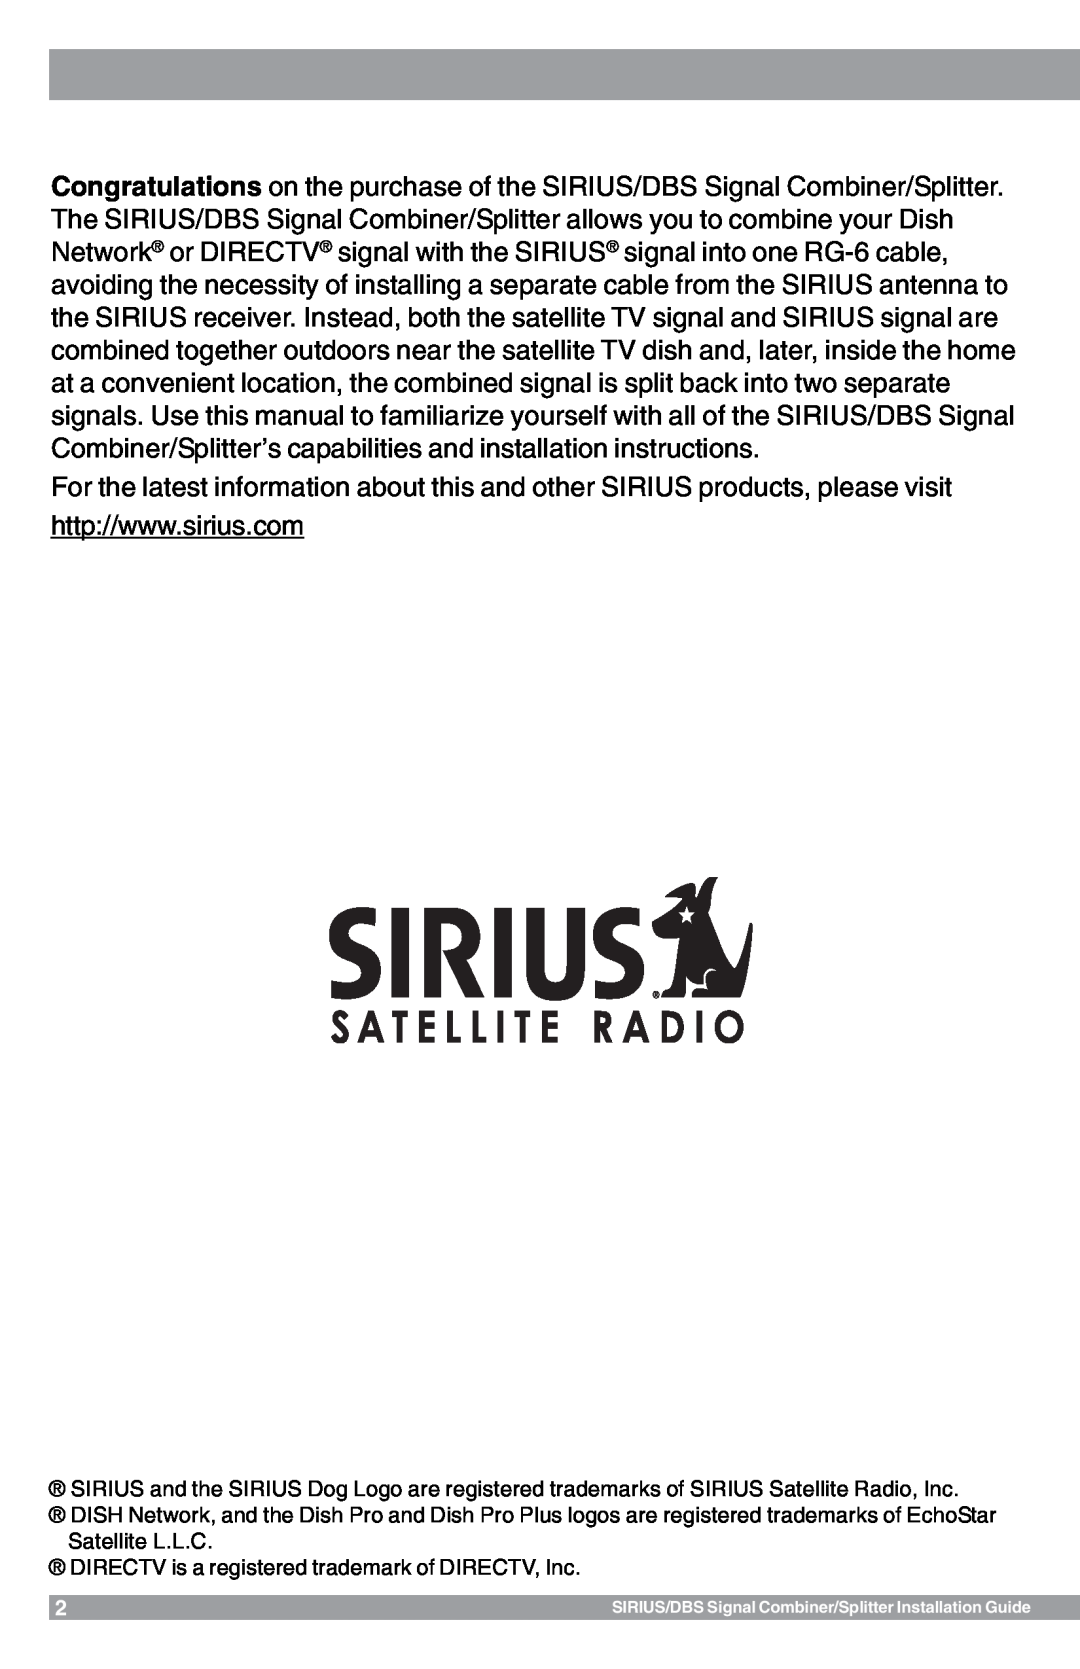 Sirius Satellite Radio SR-100C manual 